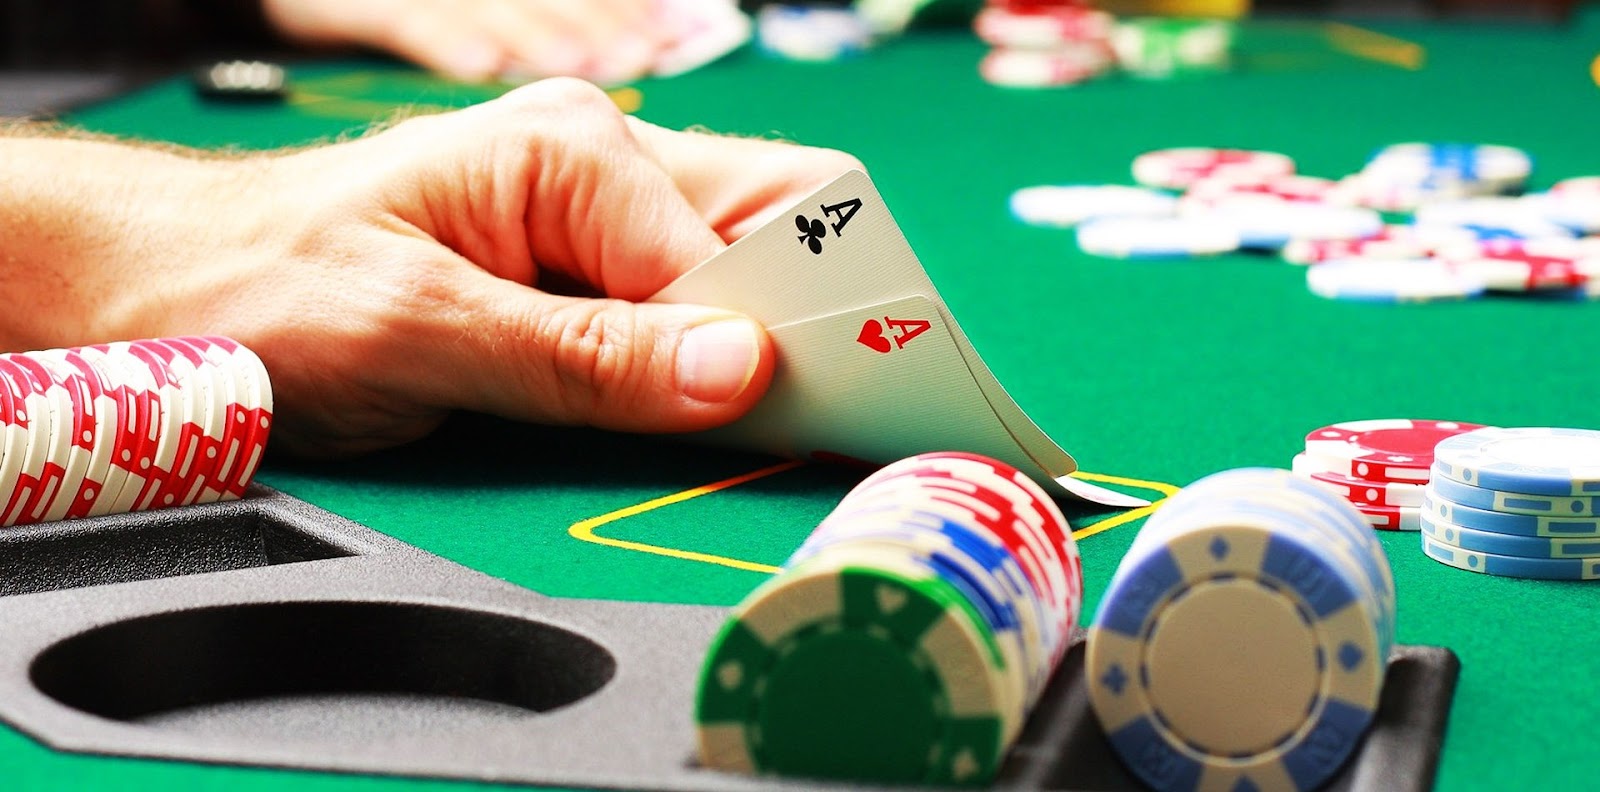 Tránh bỏ quá nhiều vào bài đợi - Chiến thuật đánh Poker thông minh